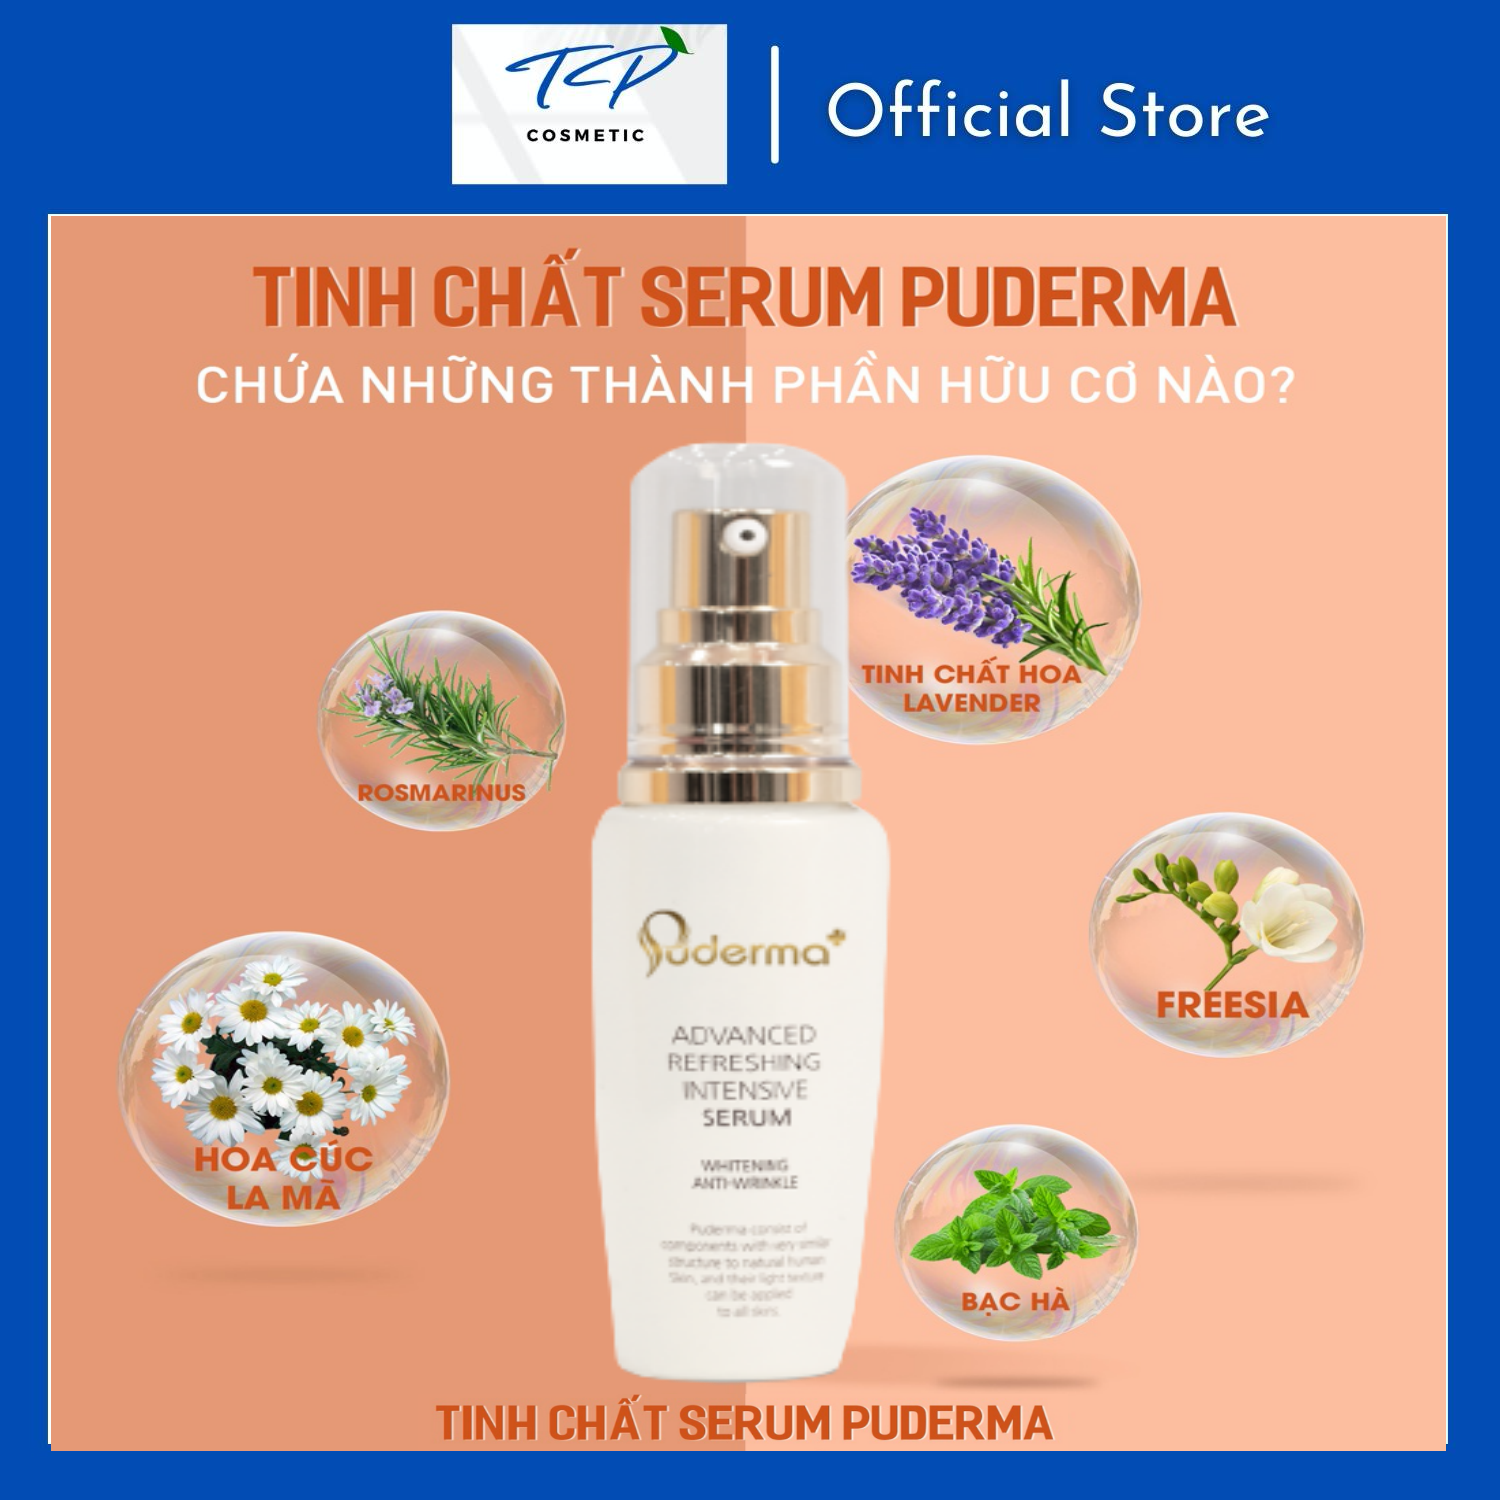 Tinh chất (Serum) dưỡng da Puderma Advanced Refreshing Intensive Serum 60ml: cung cấp vitamin và khoáng chất có lợi cho da. Hỗ trợ tái tạo những tế bào mới, cung cấp đủ độ ẩm và dưỡng chất cần thiết cho làn da.